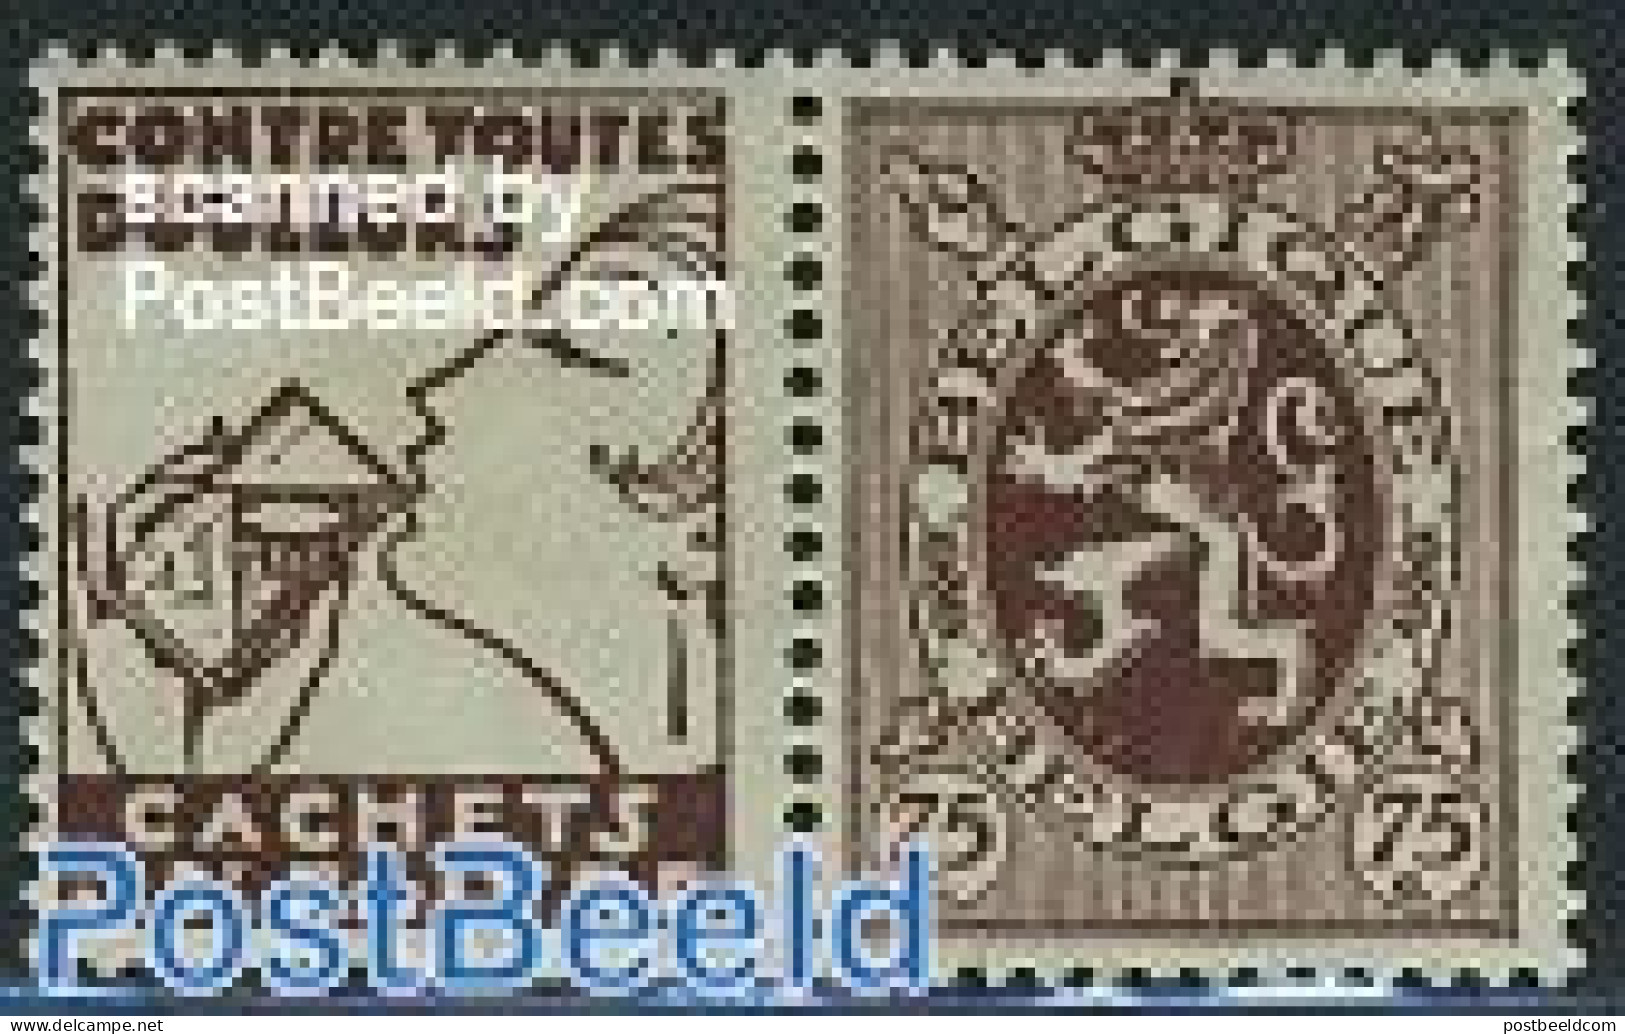 Belgium 1929 75c + Cachets Du Dr Faivre Tab, Mint NH - Nuevos